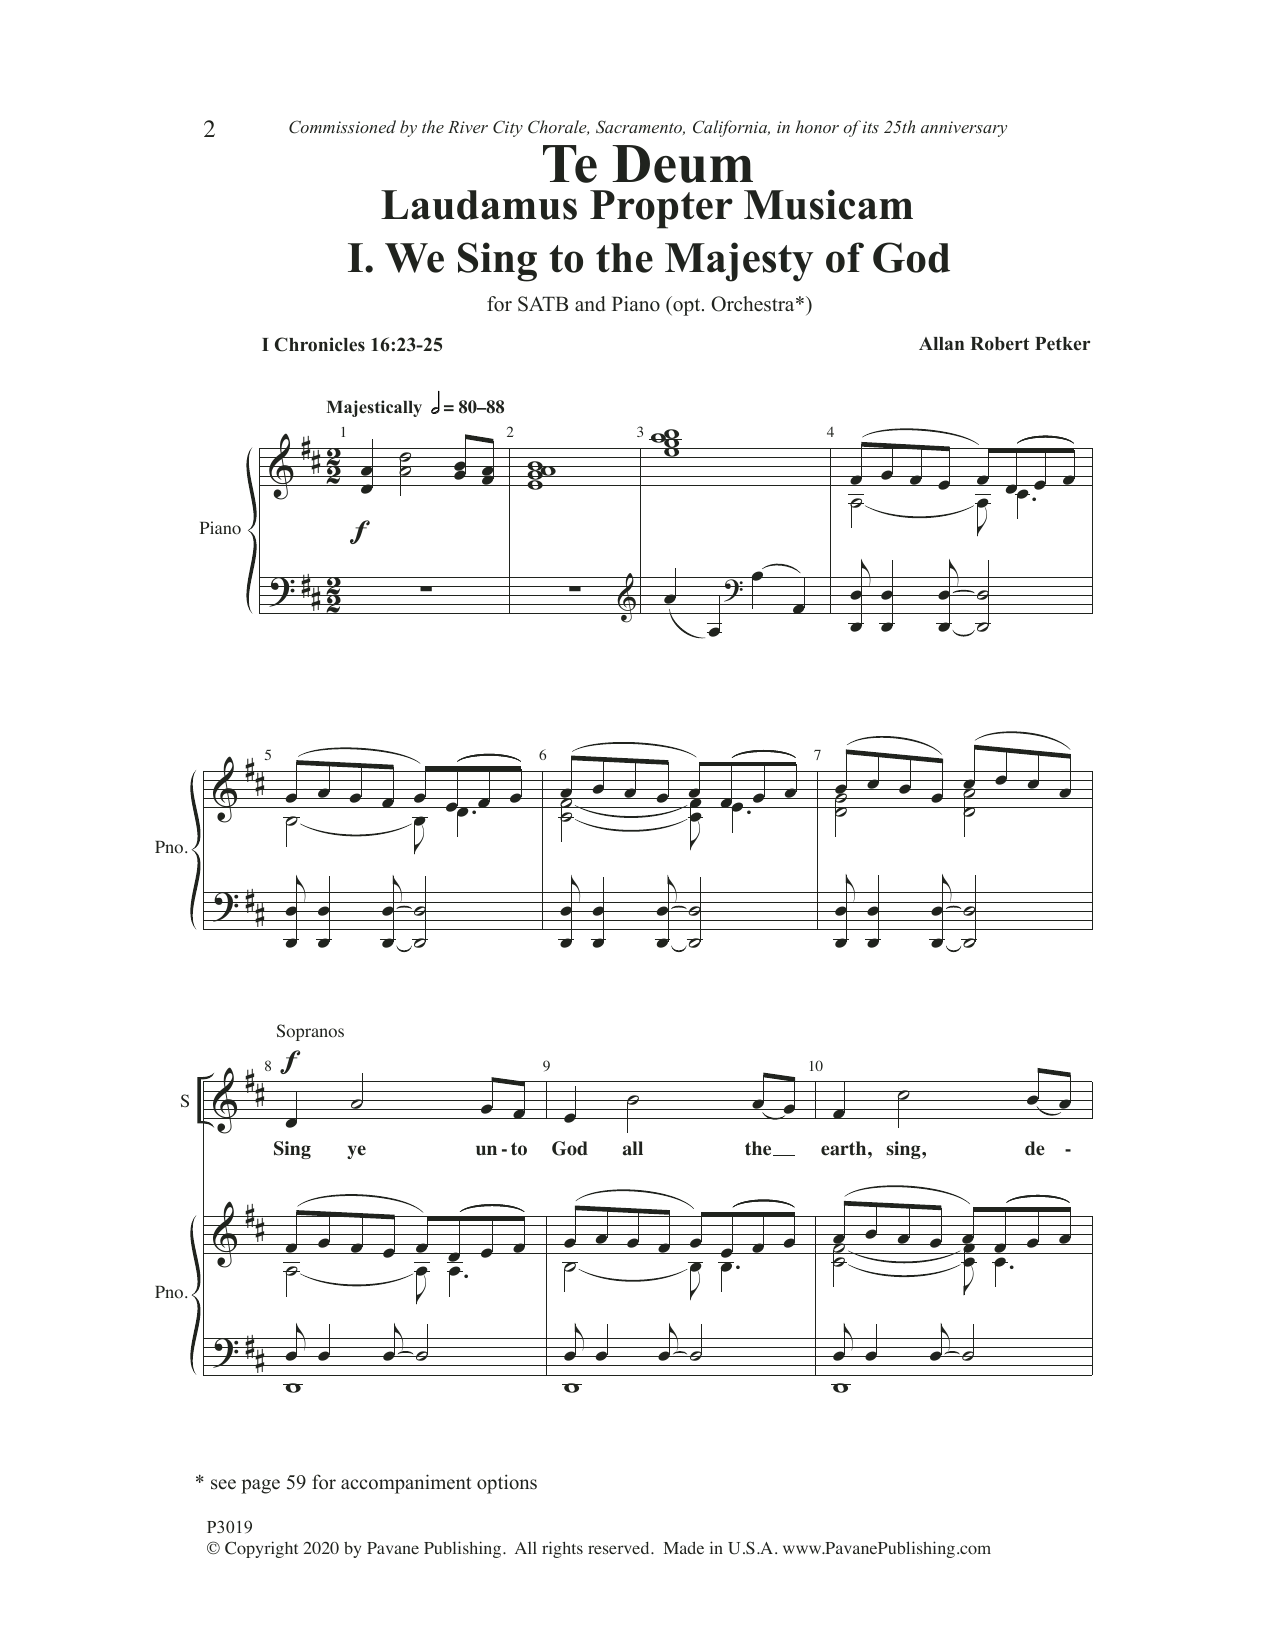 Download Allan Robert Petker Te Deum Laudamus Propter Musicam Sheet Music and learn how to play SATB Choir PDF digital score in minutes